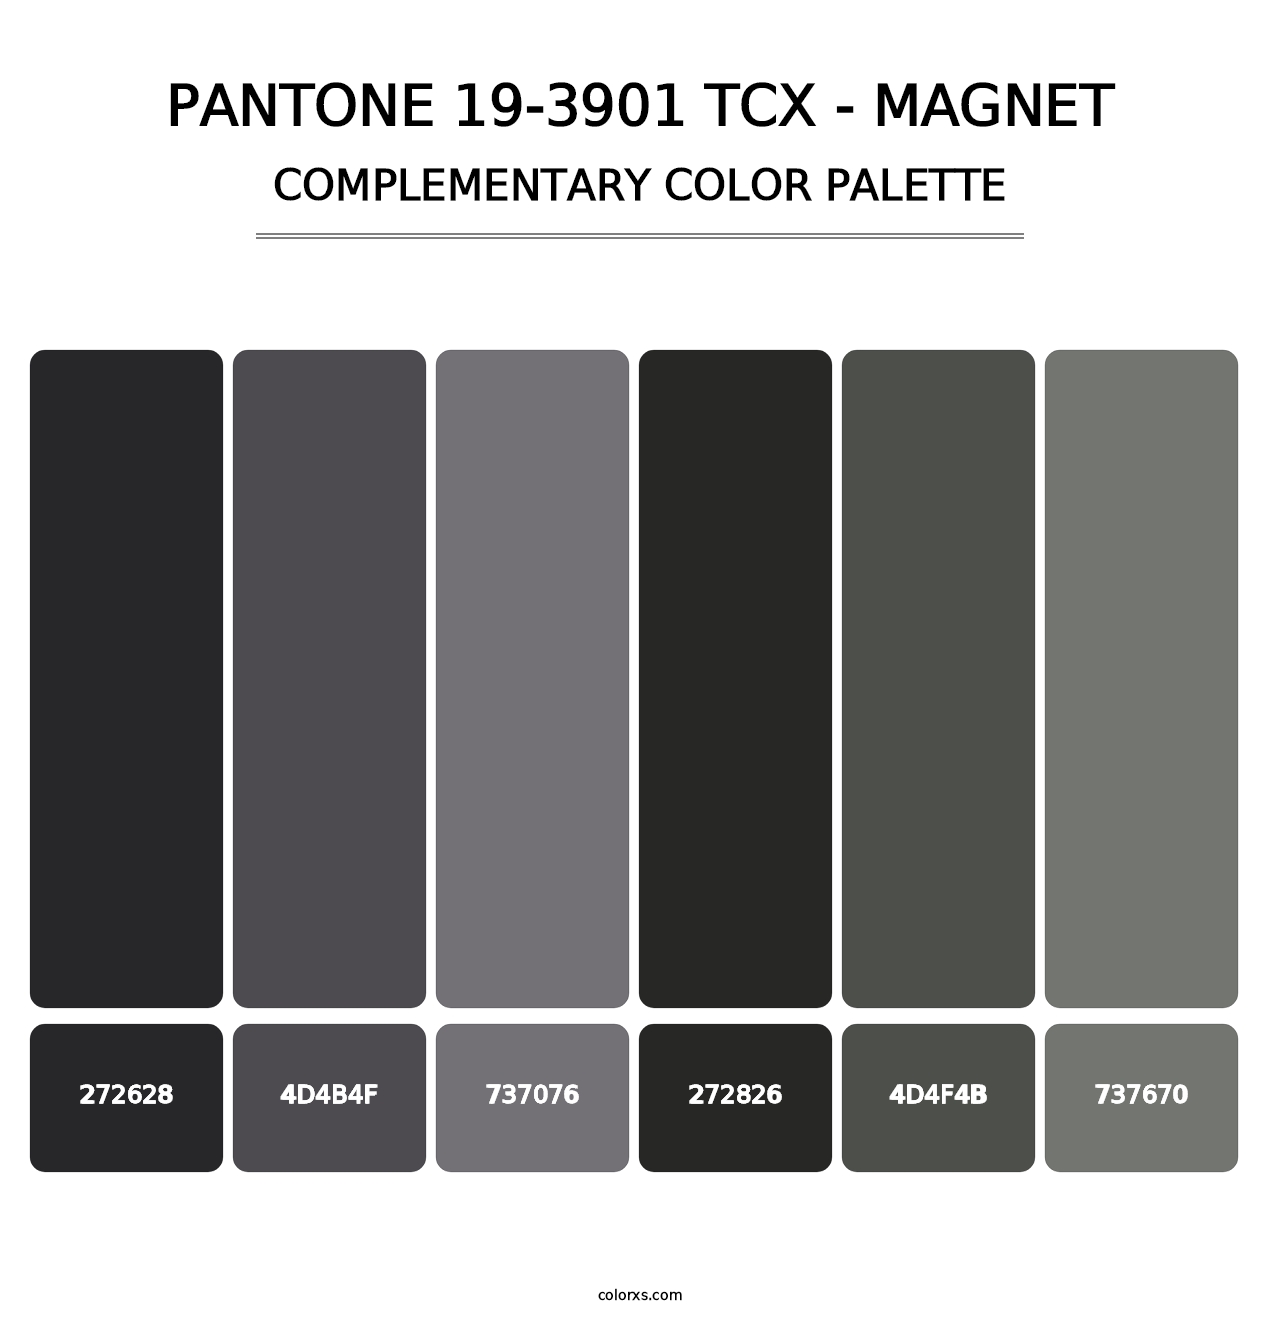 PANTONE 19-3901 TCX - Magnet - Complementary Color Palette